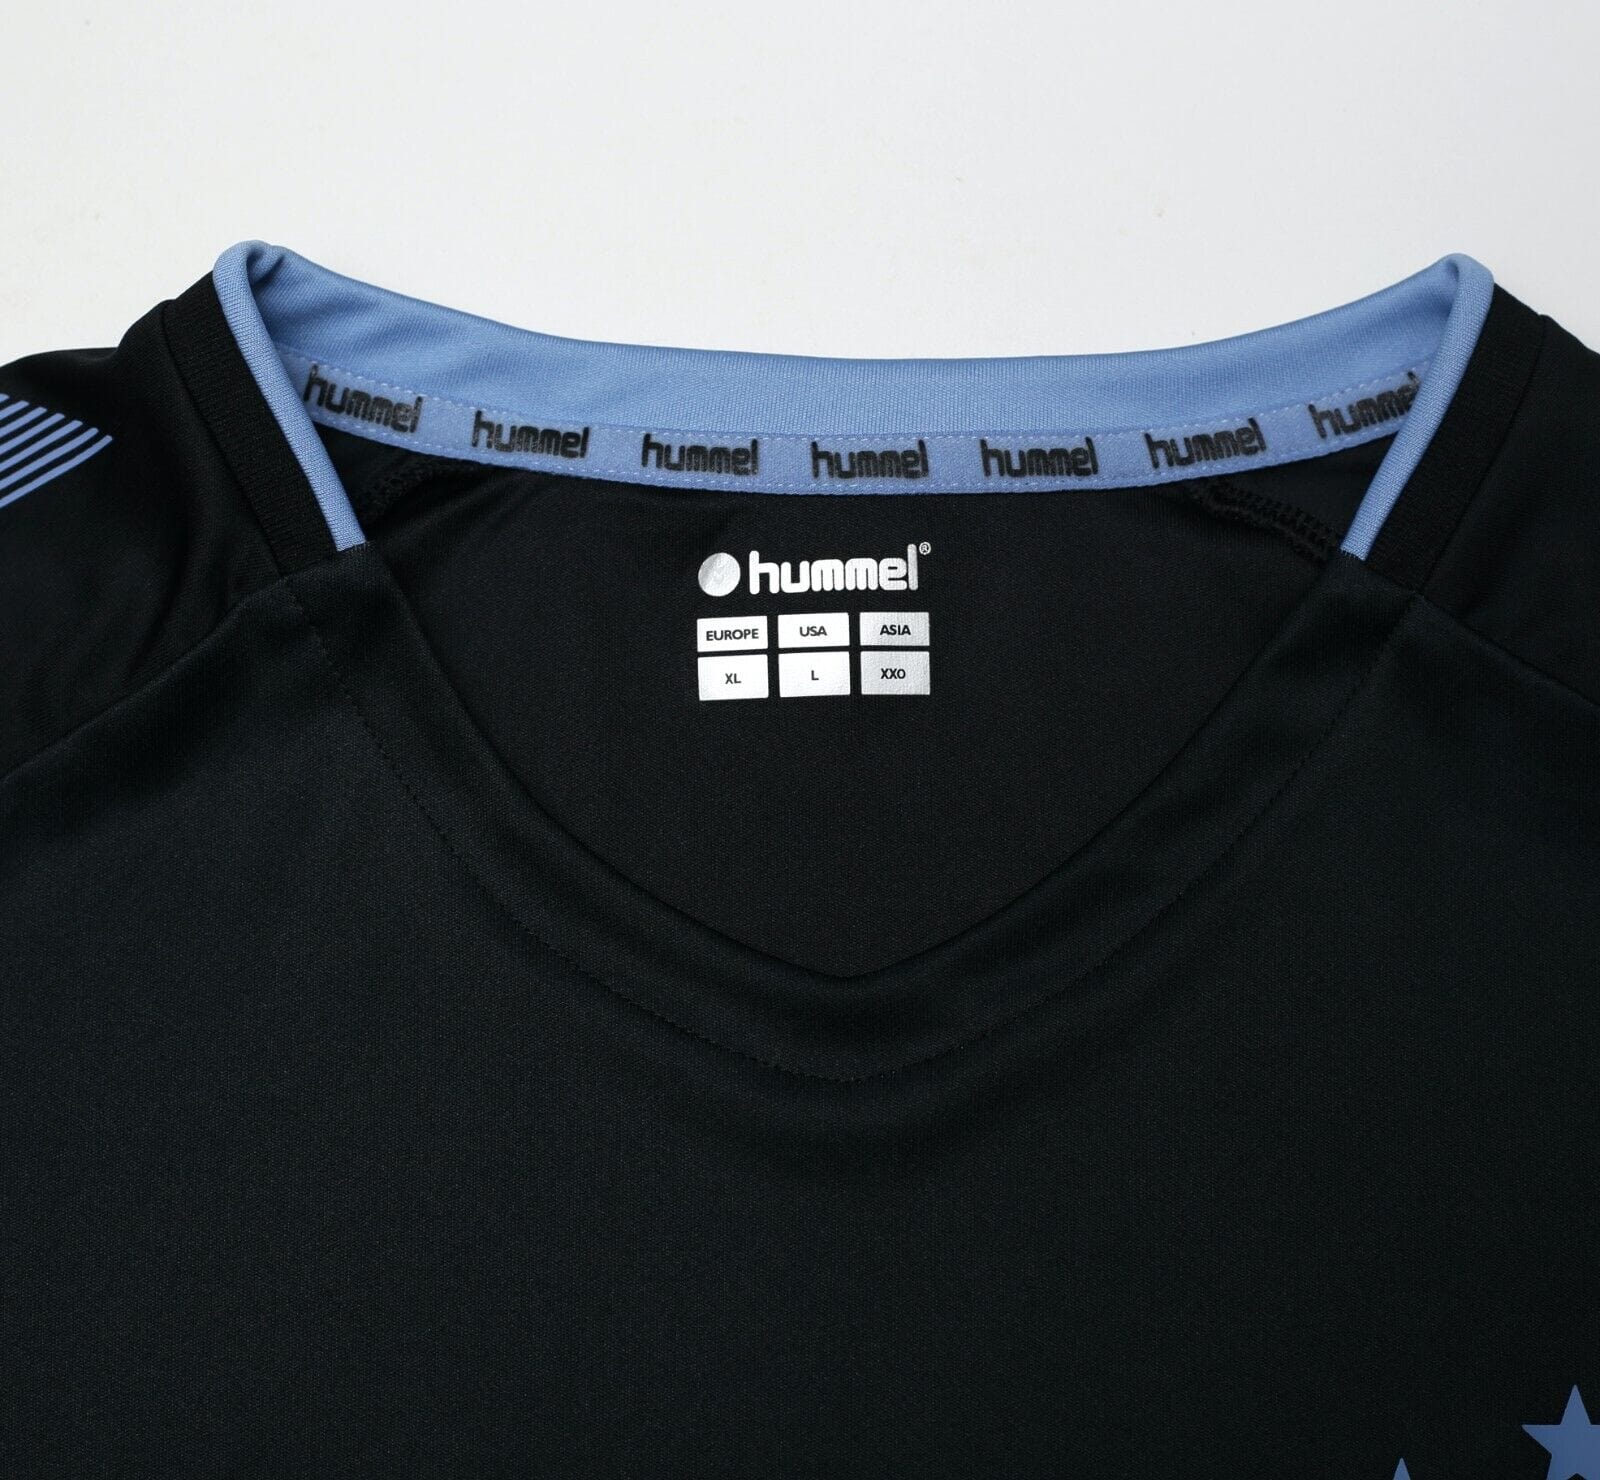 2019/20 RANGERS Hummel Away Football Shirt Jersey (L/XL)